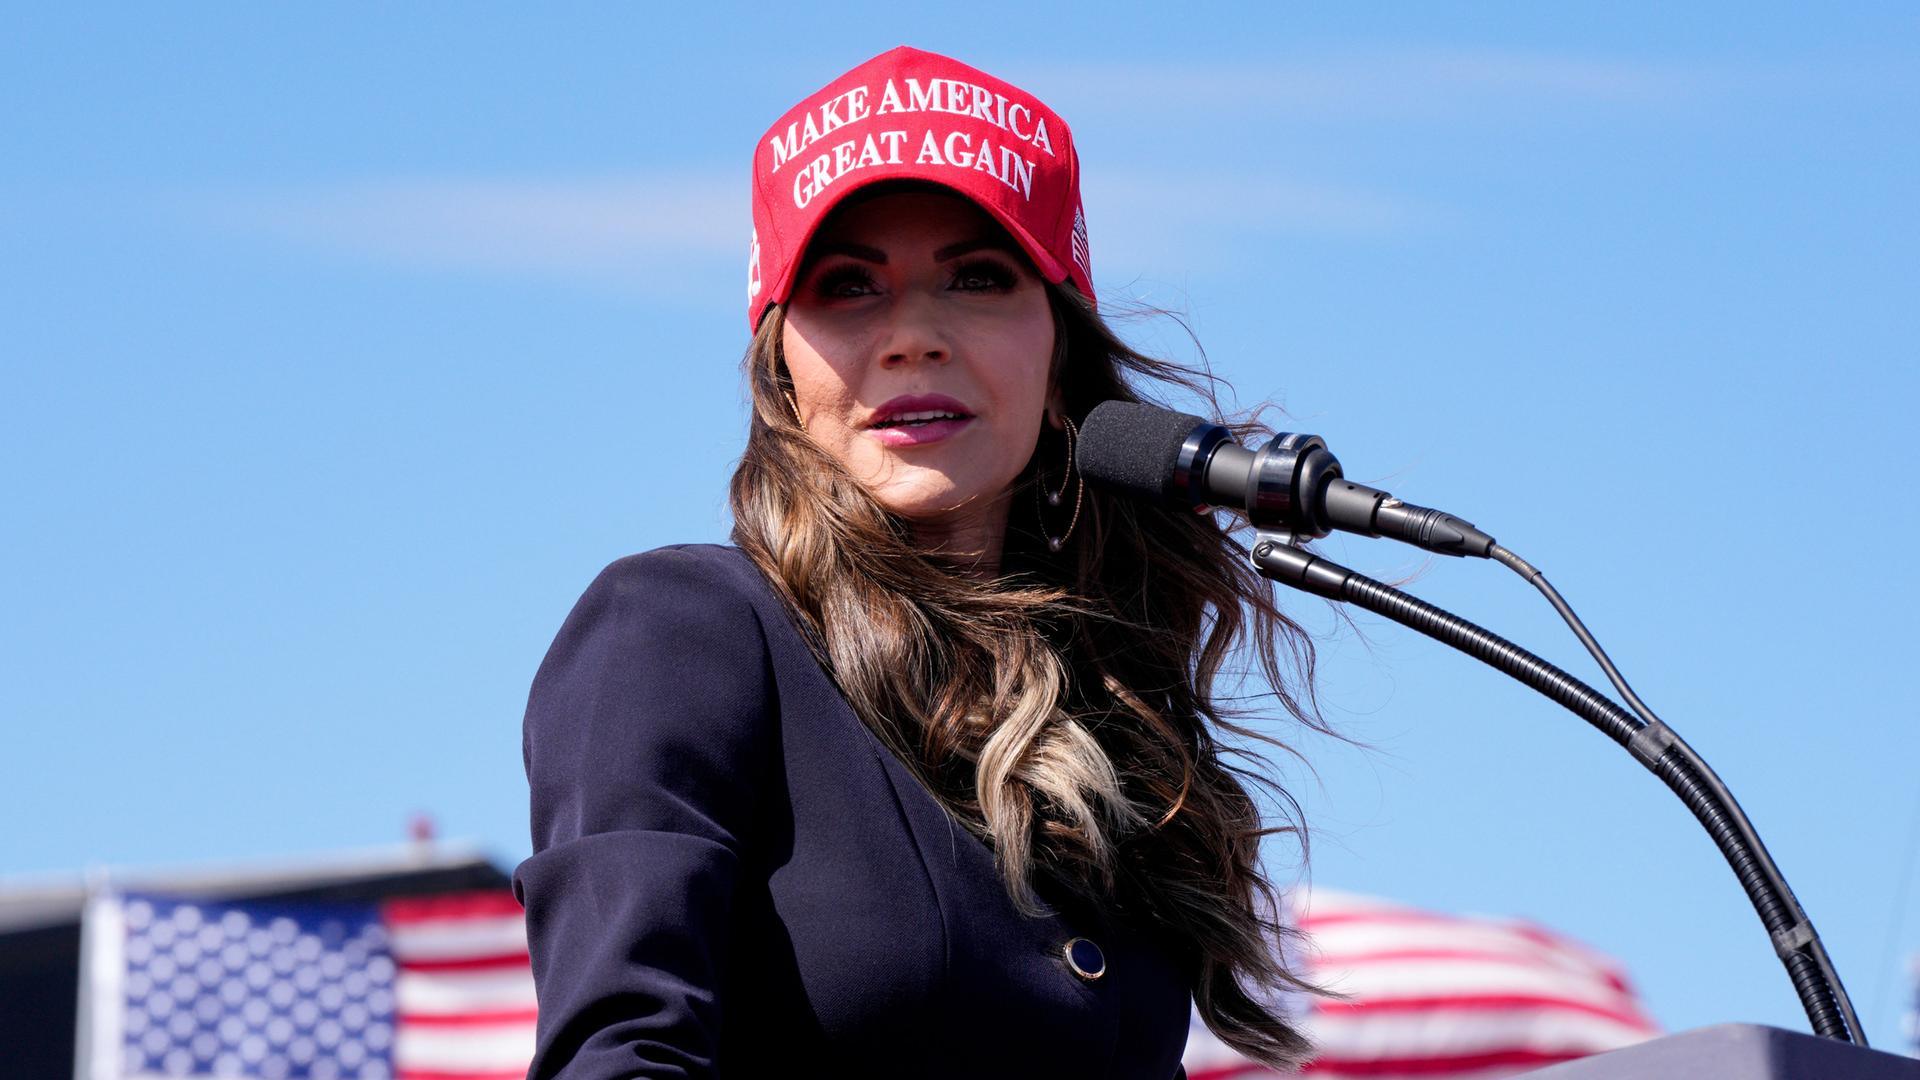 Kristi Noem hält eine Rede unter freiem Himmel. Sie trägt die gleiche rote Kappe wie Donald Trump. Darauf steht "Make America great again".